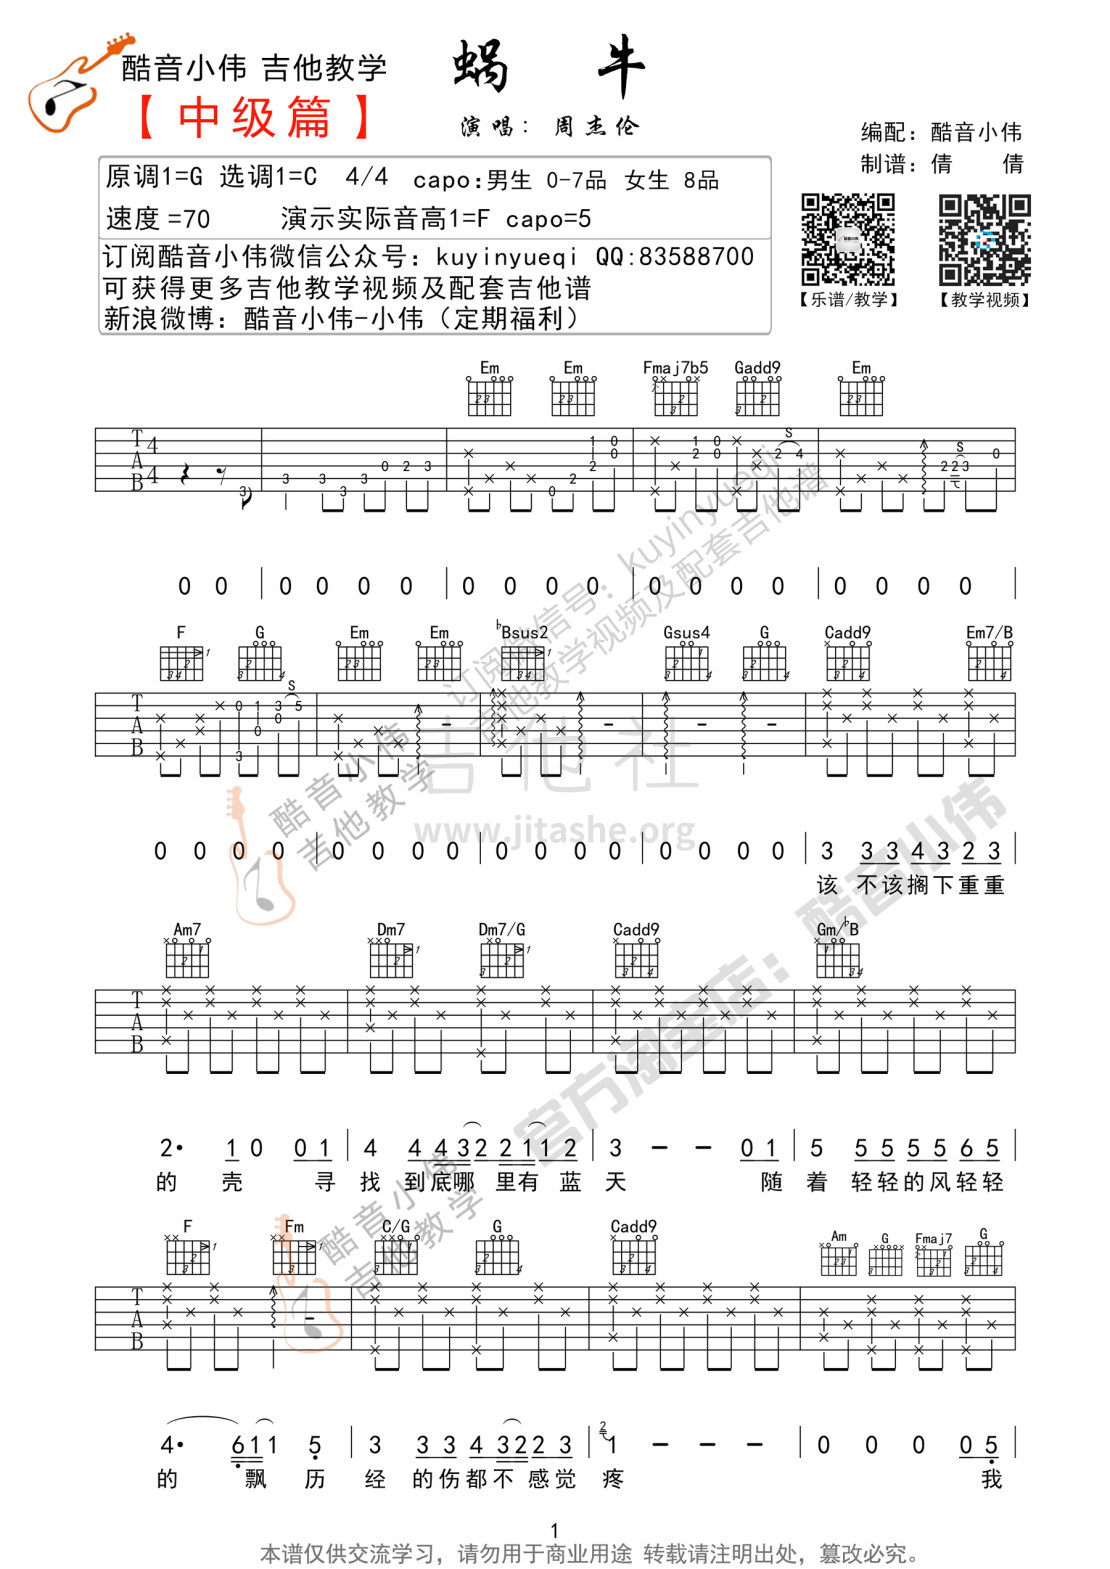 打印:蜗牛(C调中级篇吉他谱 酷音小伟吉他教学)吉他谱_周杰伦(Jay Chou)_蜗牛吉他谱01.jpg